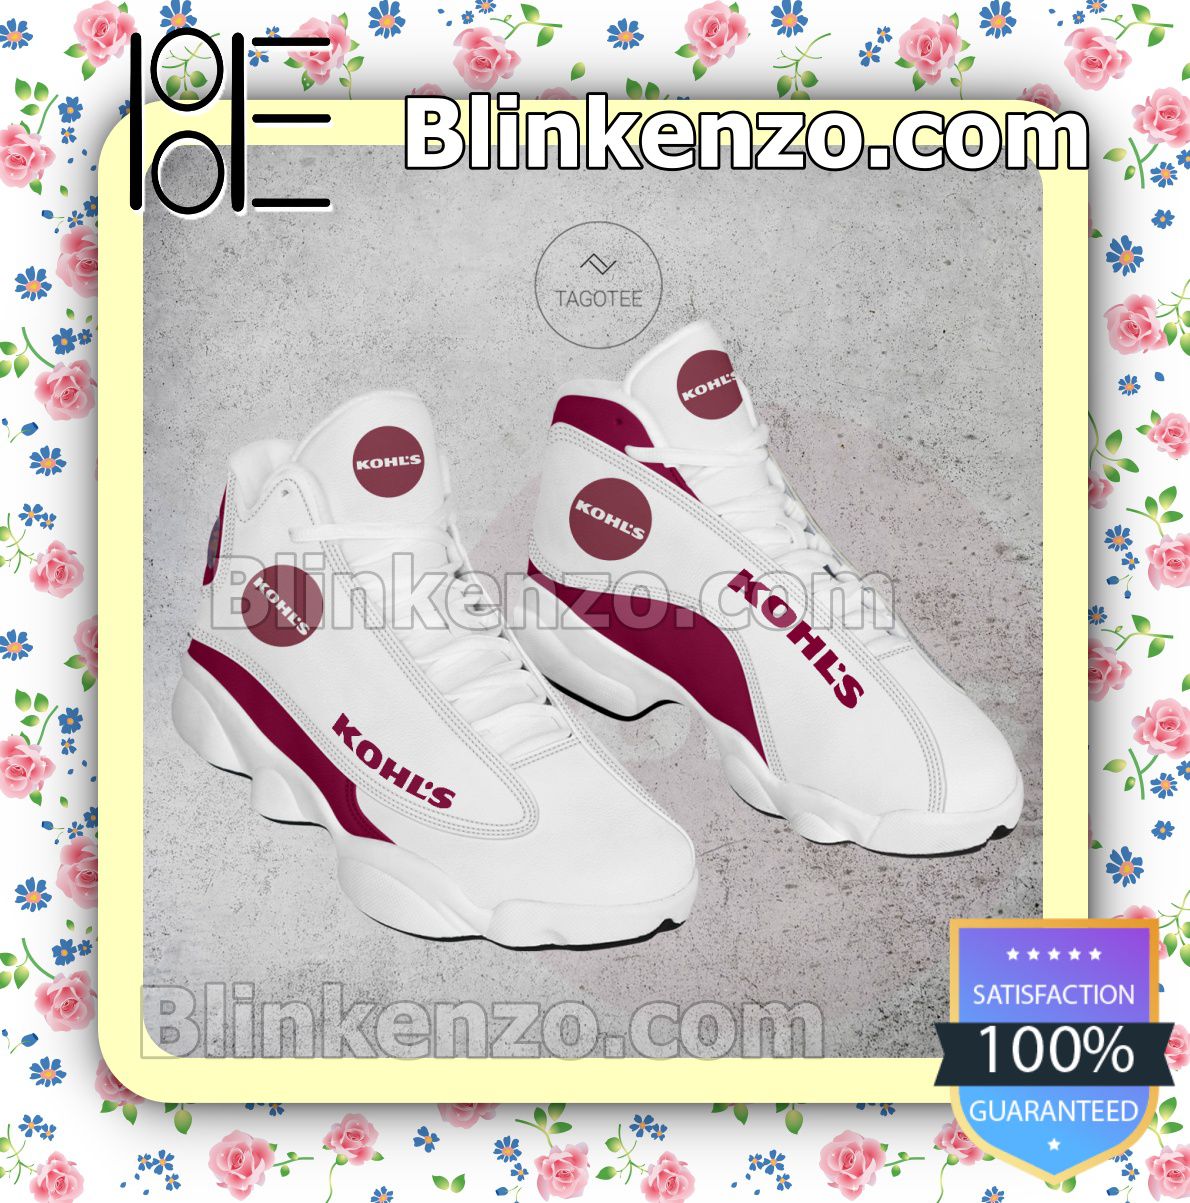 Air Jordan 13 Retro Sneakers - Blinkenzo